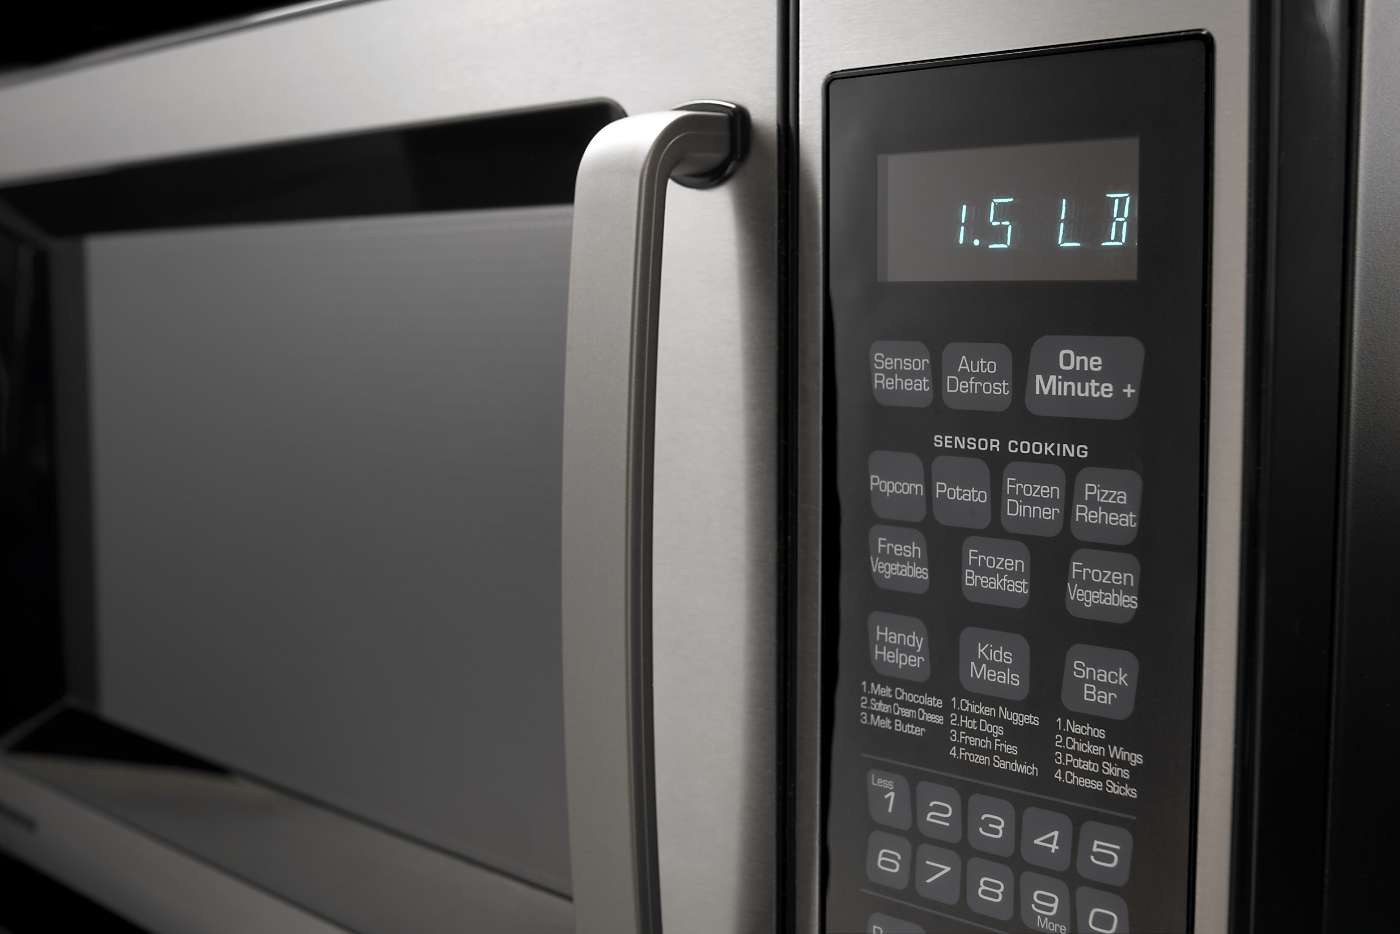 Built-In vs. Countertop Microwaves